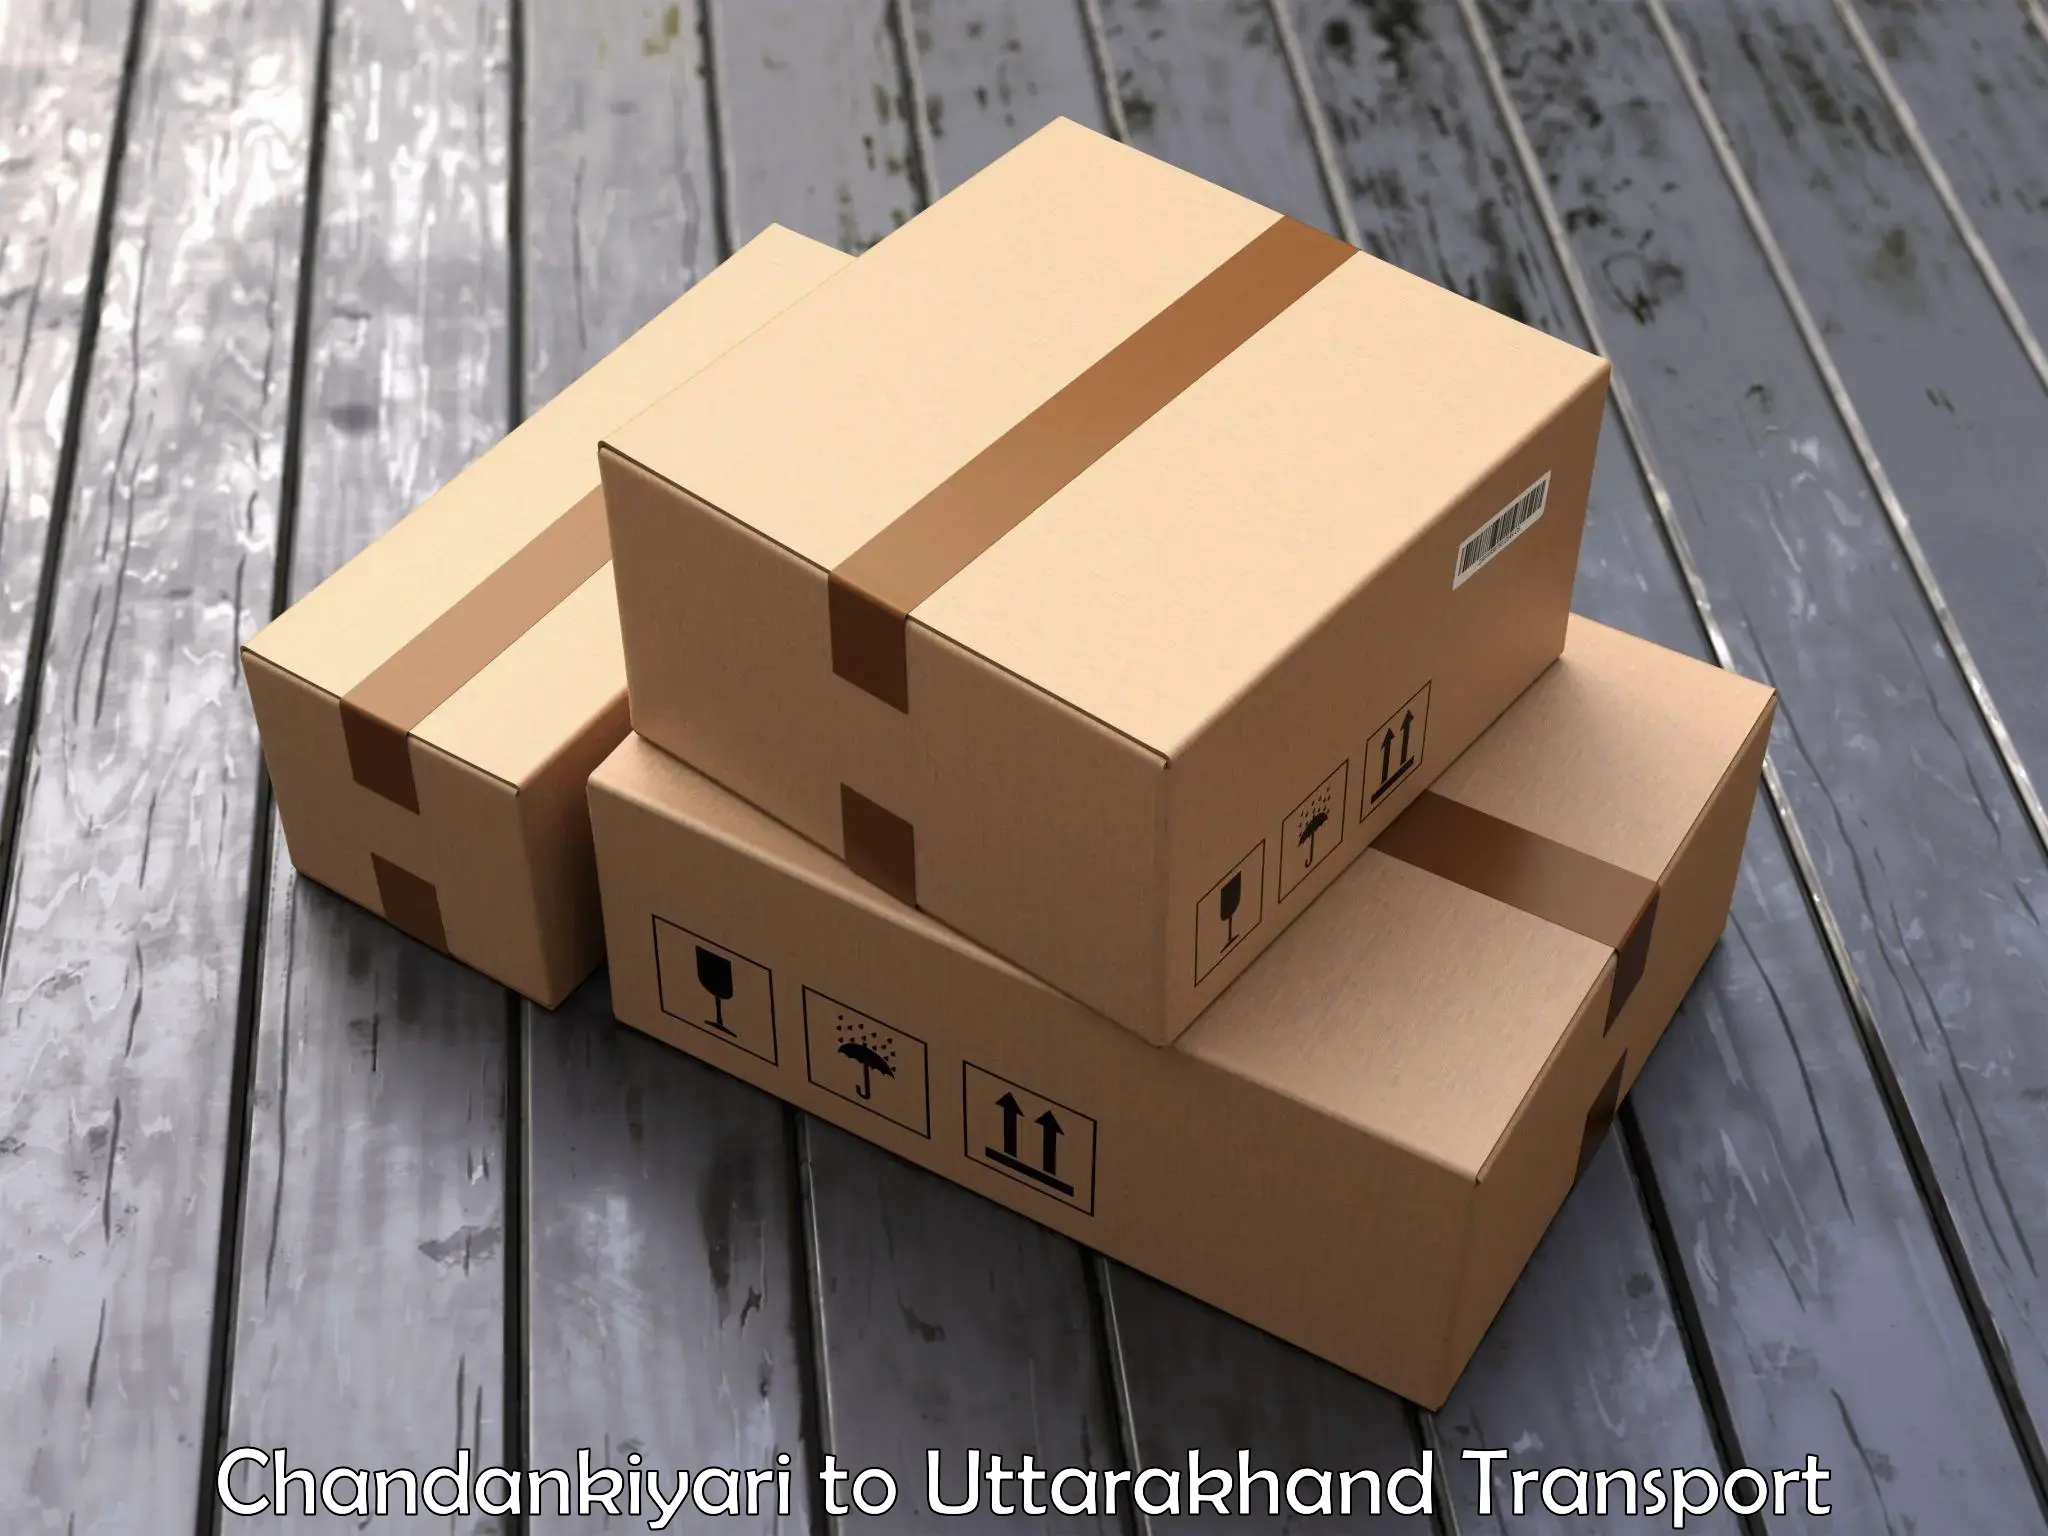 Daily parcel service transport in Chandankiyari to Lansdowne